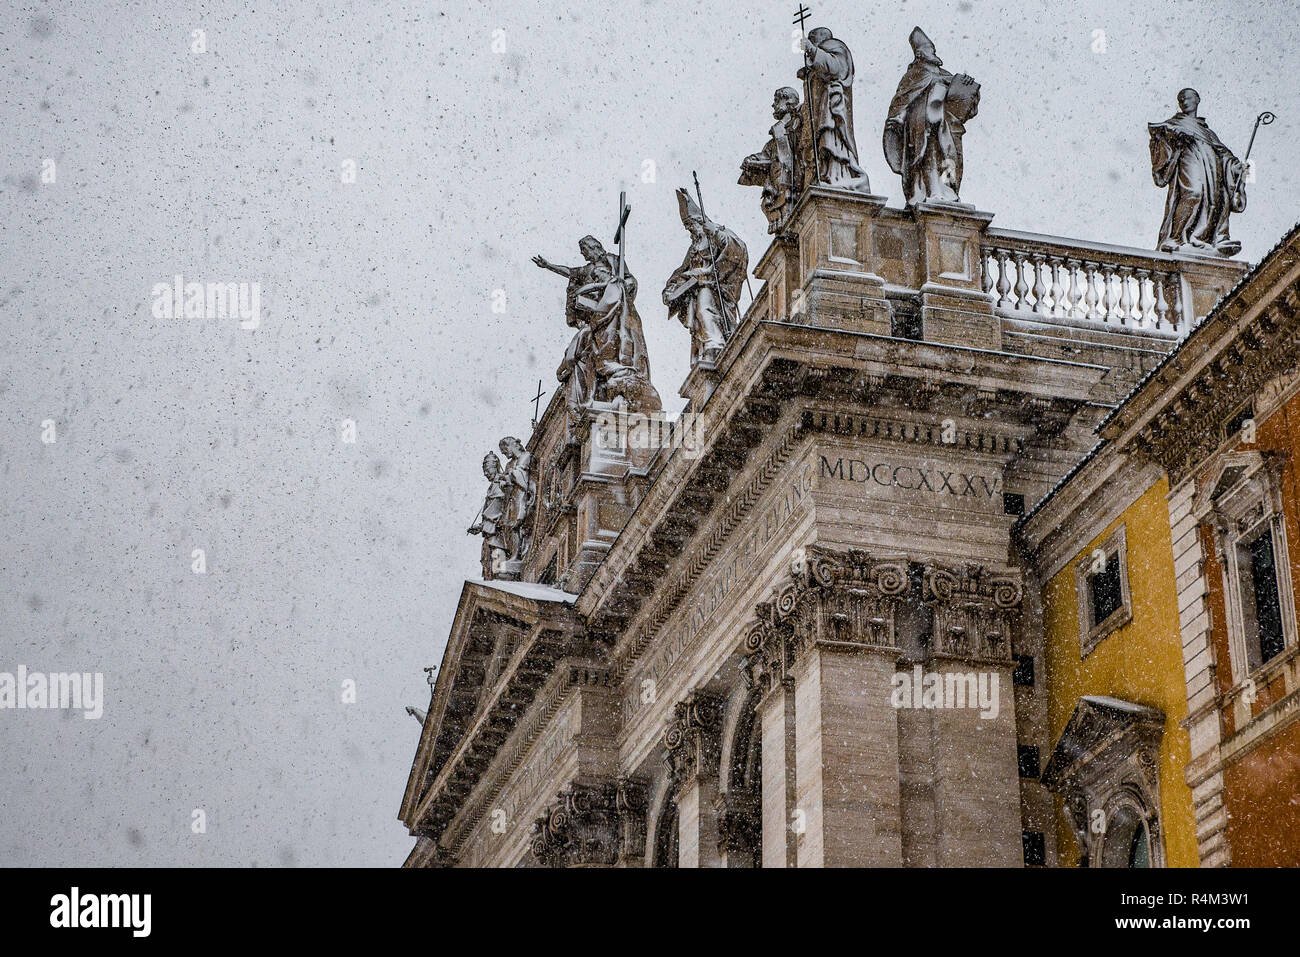 Italy lazio Rome Snow in Piazza San Giovanni. Stock Photo